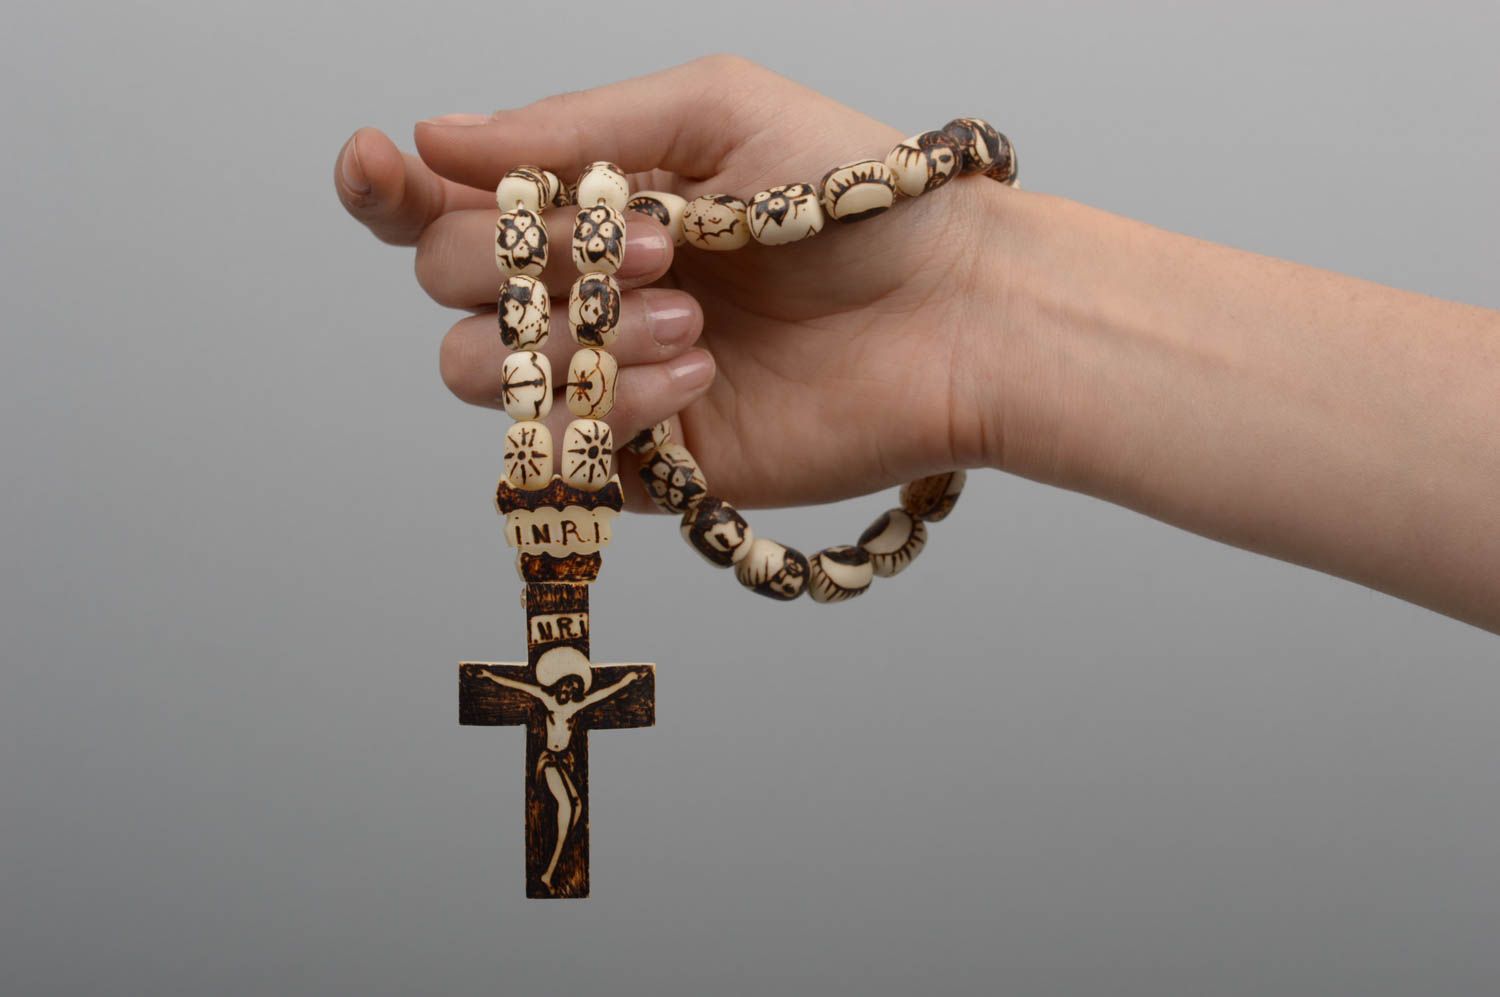 Prayer rope handmade rosary beads designer accessories inspirational gifts photo 5